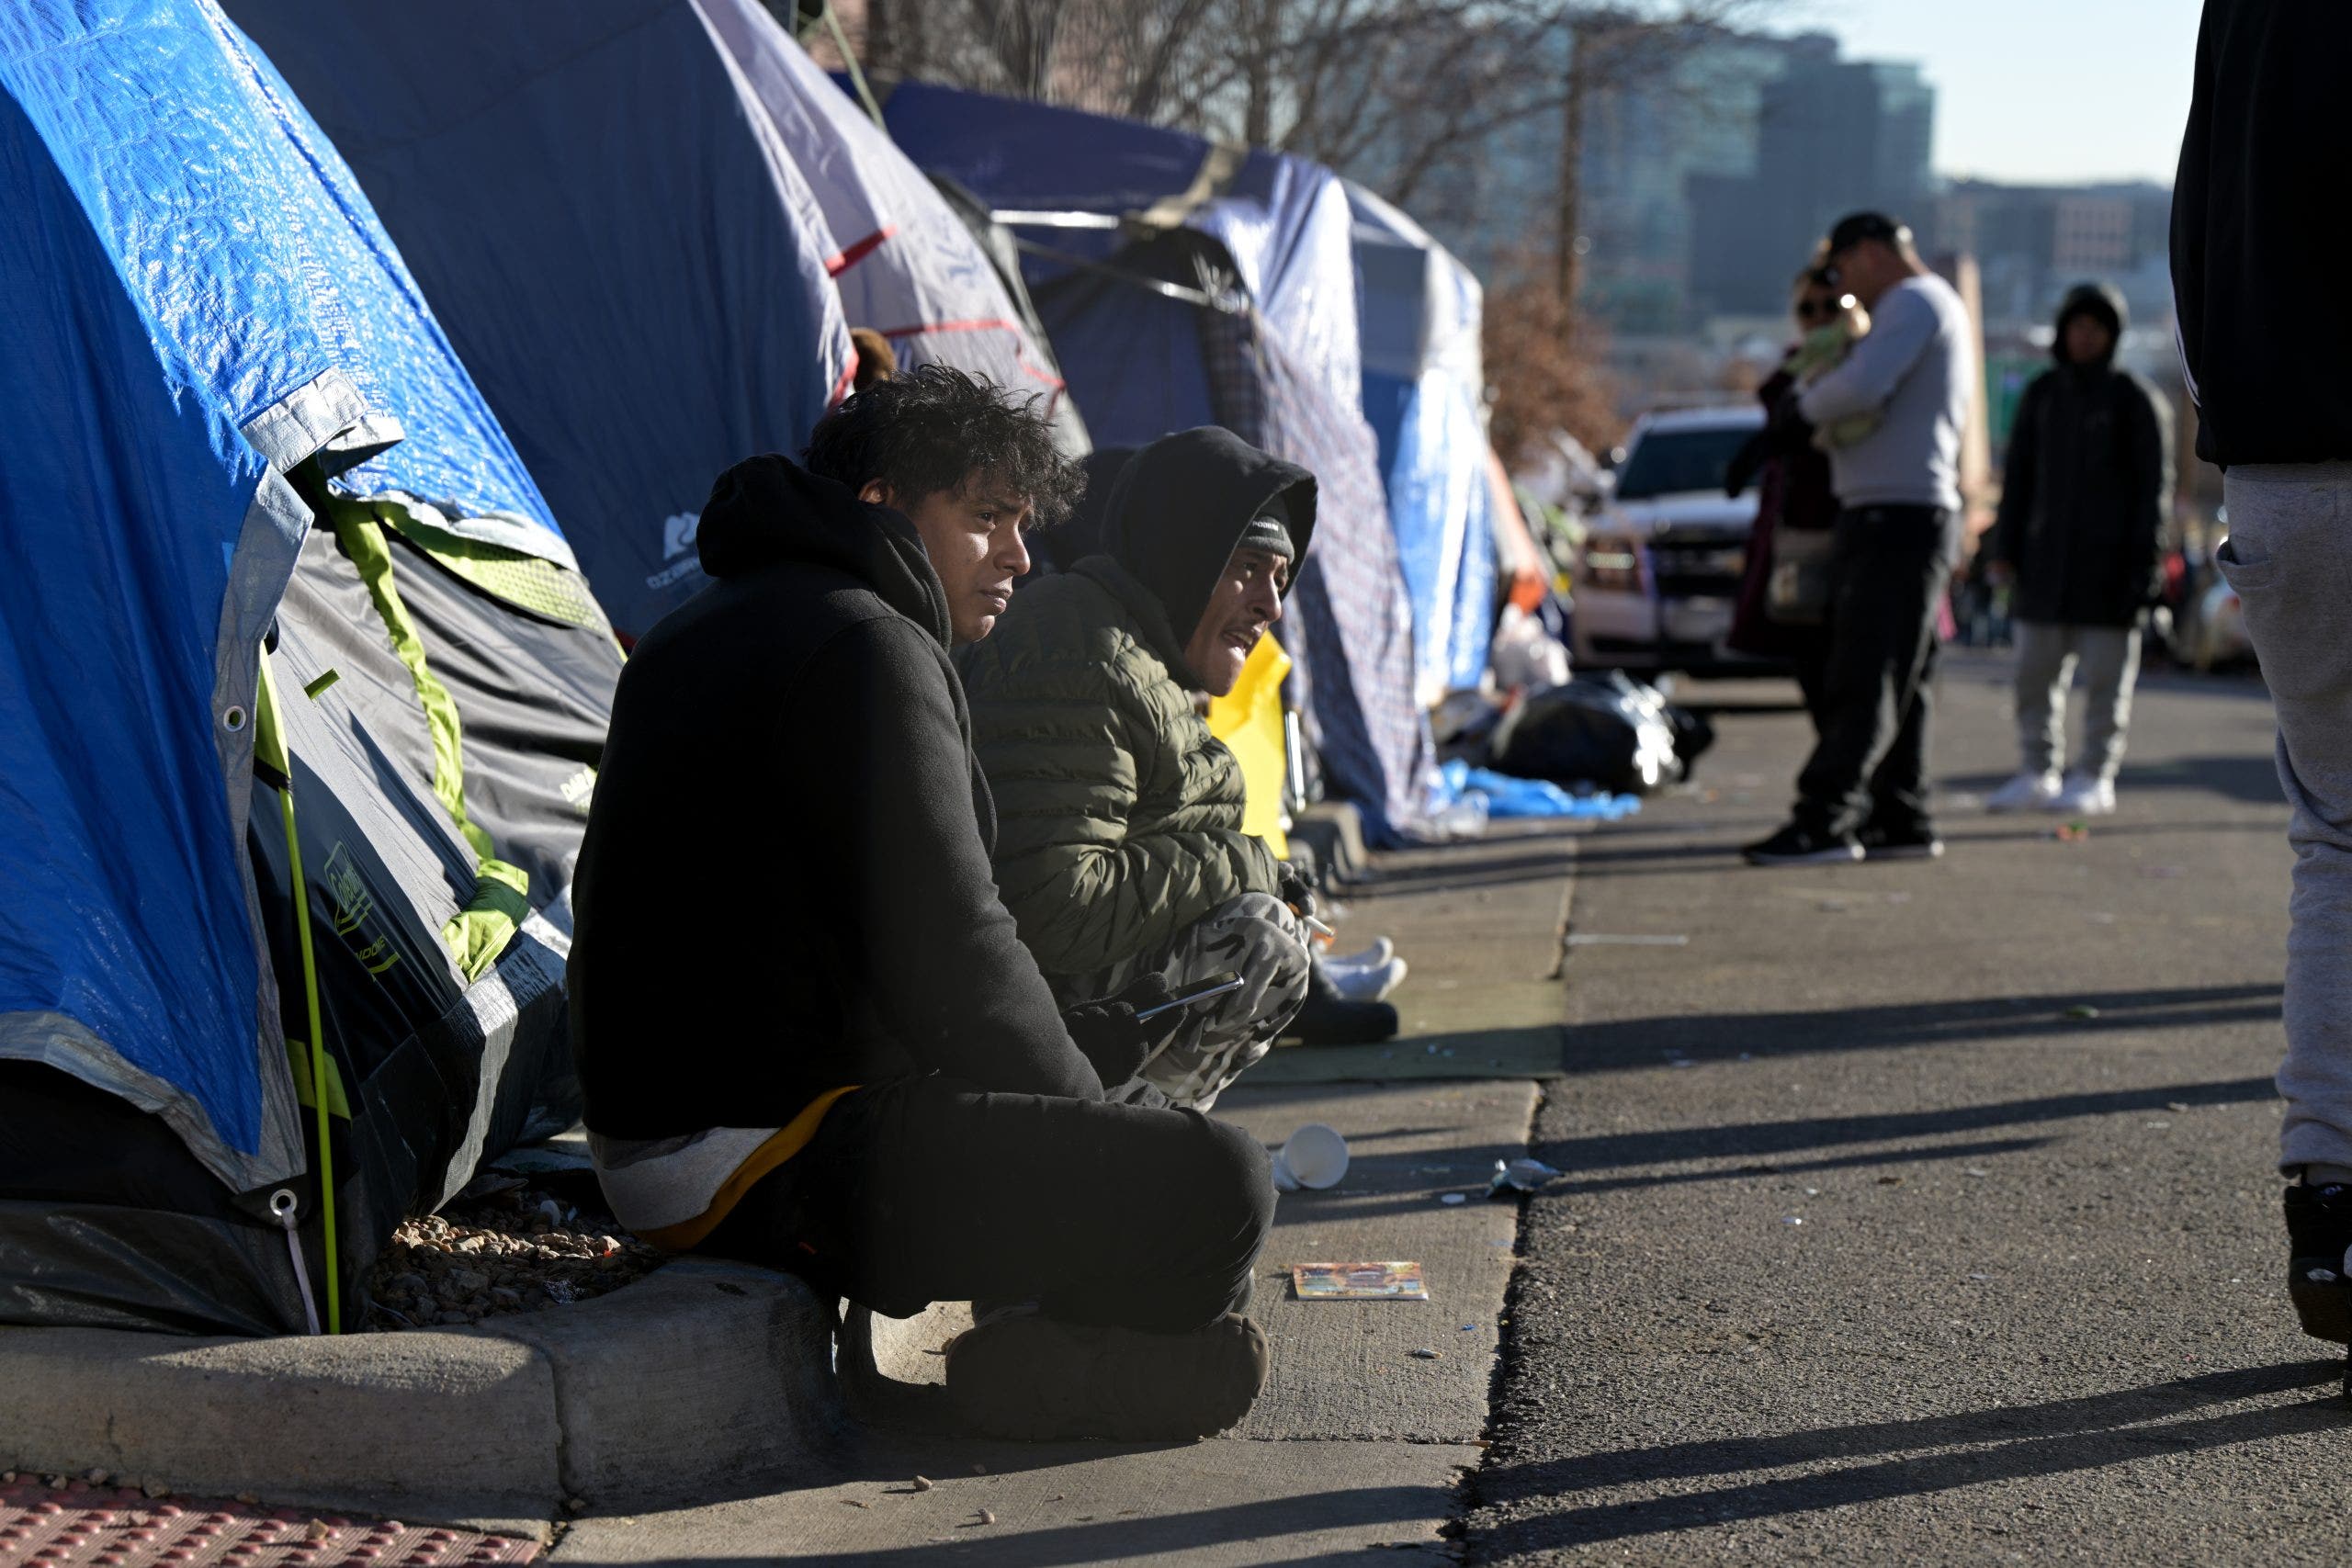 Denver migrants refuse to leave encampment, send mayor list of demands